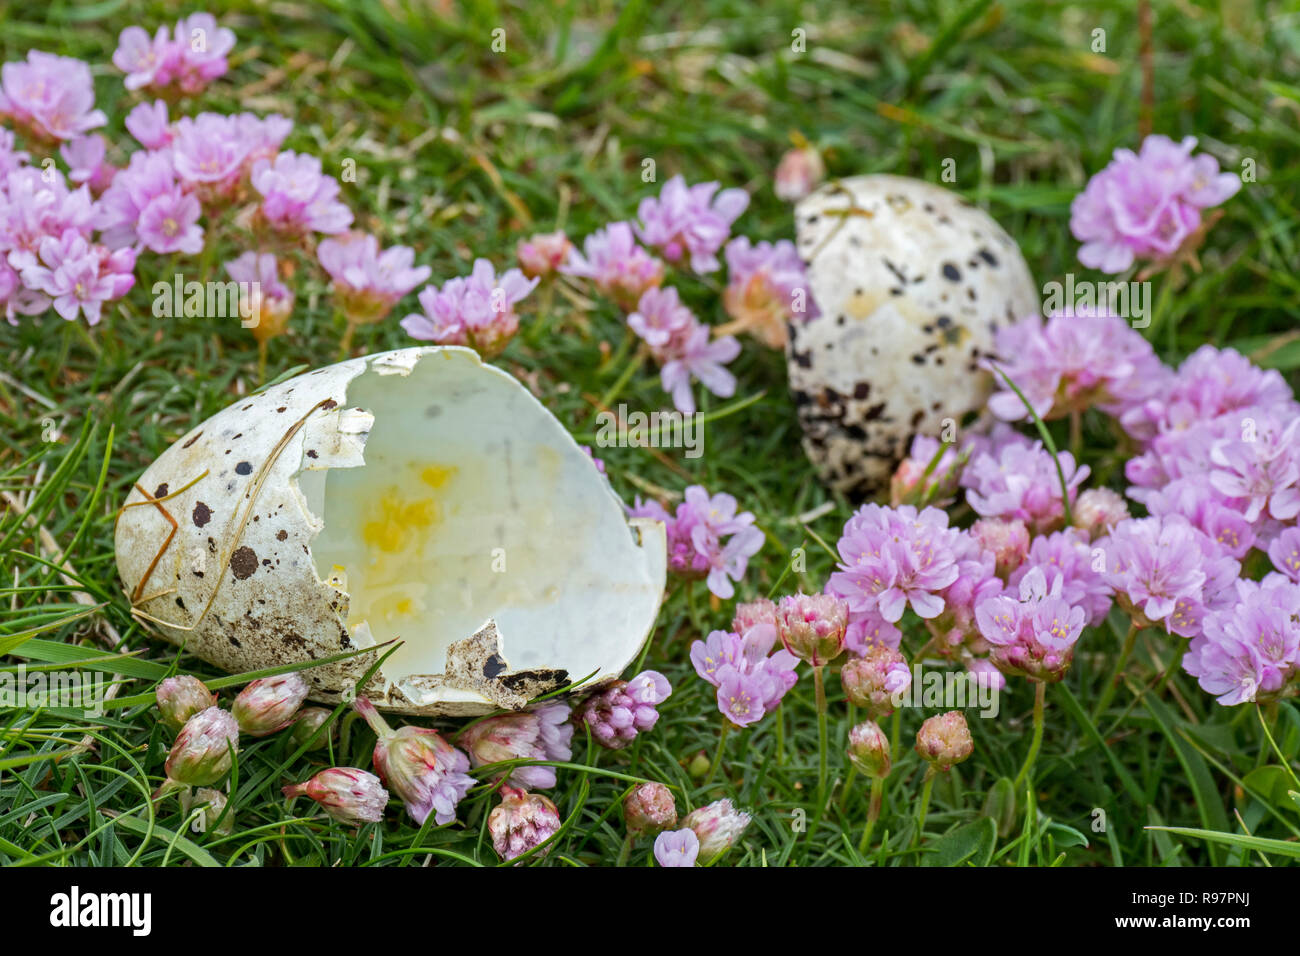 In realtà risaliva a prima di gusci di uova di razorbill (Alca torda) rotto e mangiato da aringa gabbiano o grande skua in primavera, Scotland, Regno Unito Foto Stock